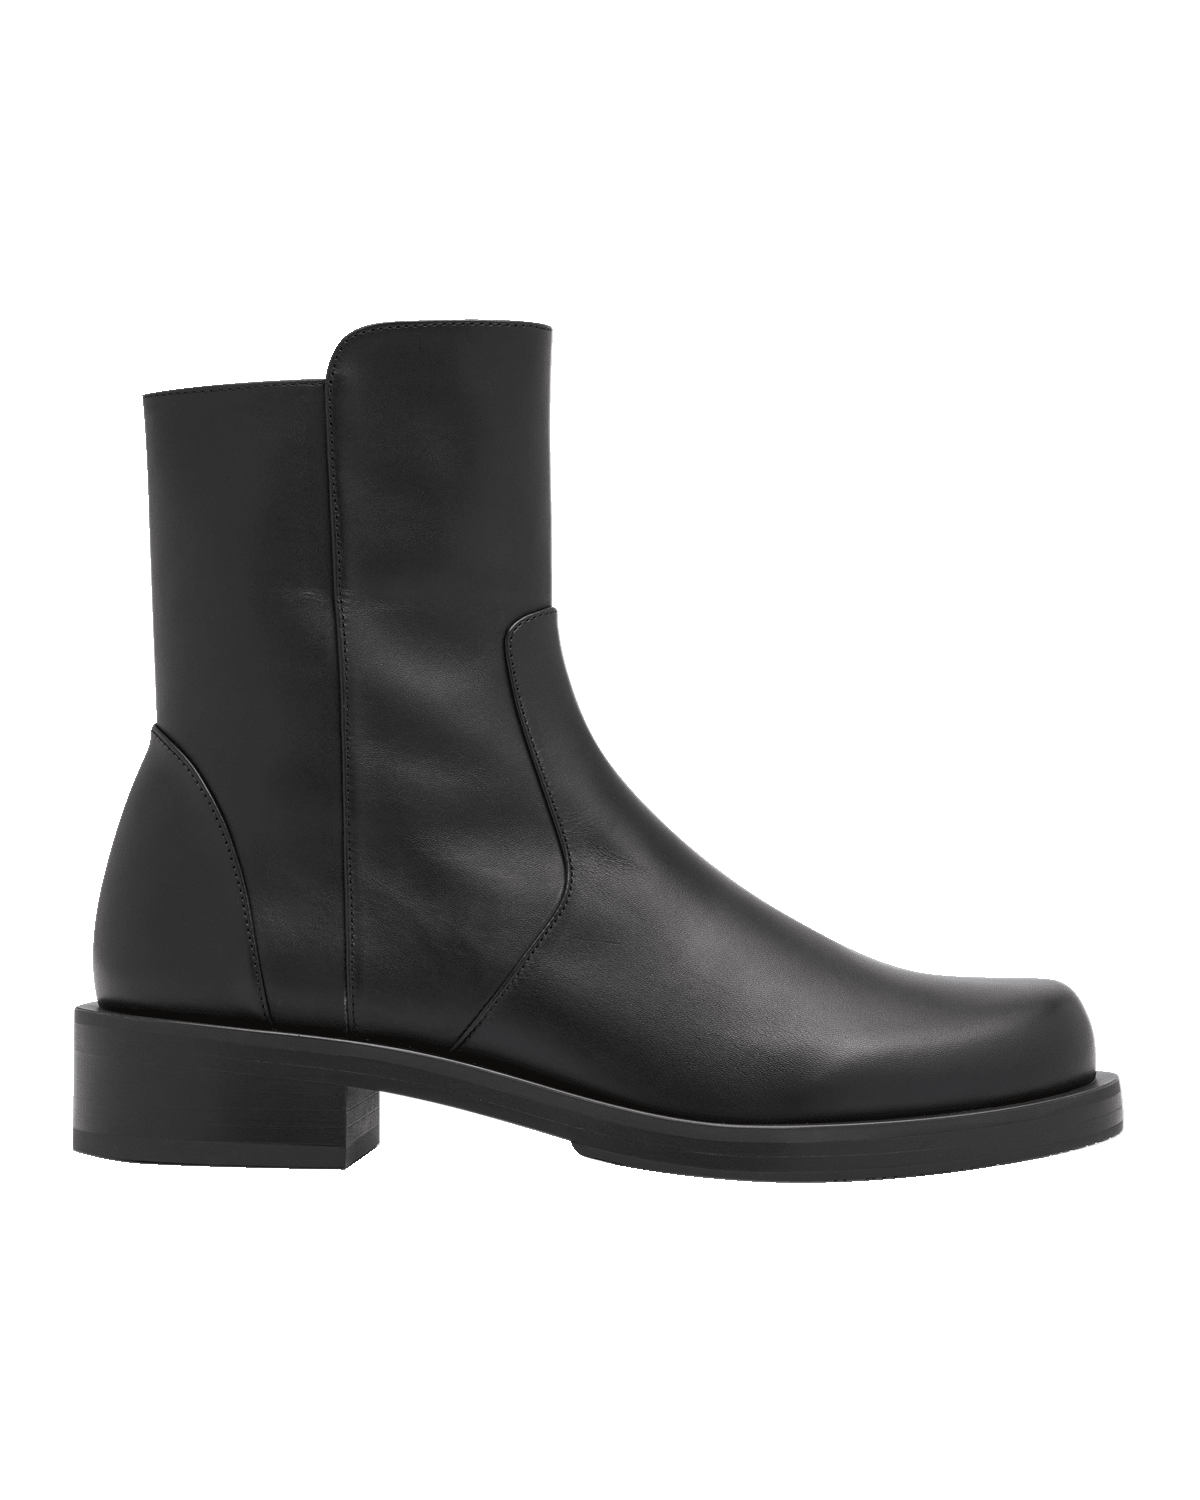 Stuart Weitzman 5050 Suede Over-The-Knee Boots | Neiman Marcus